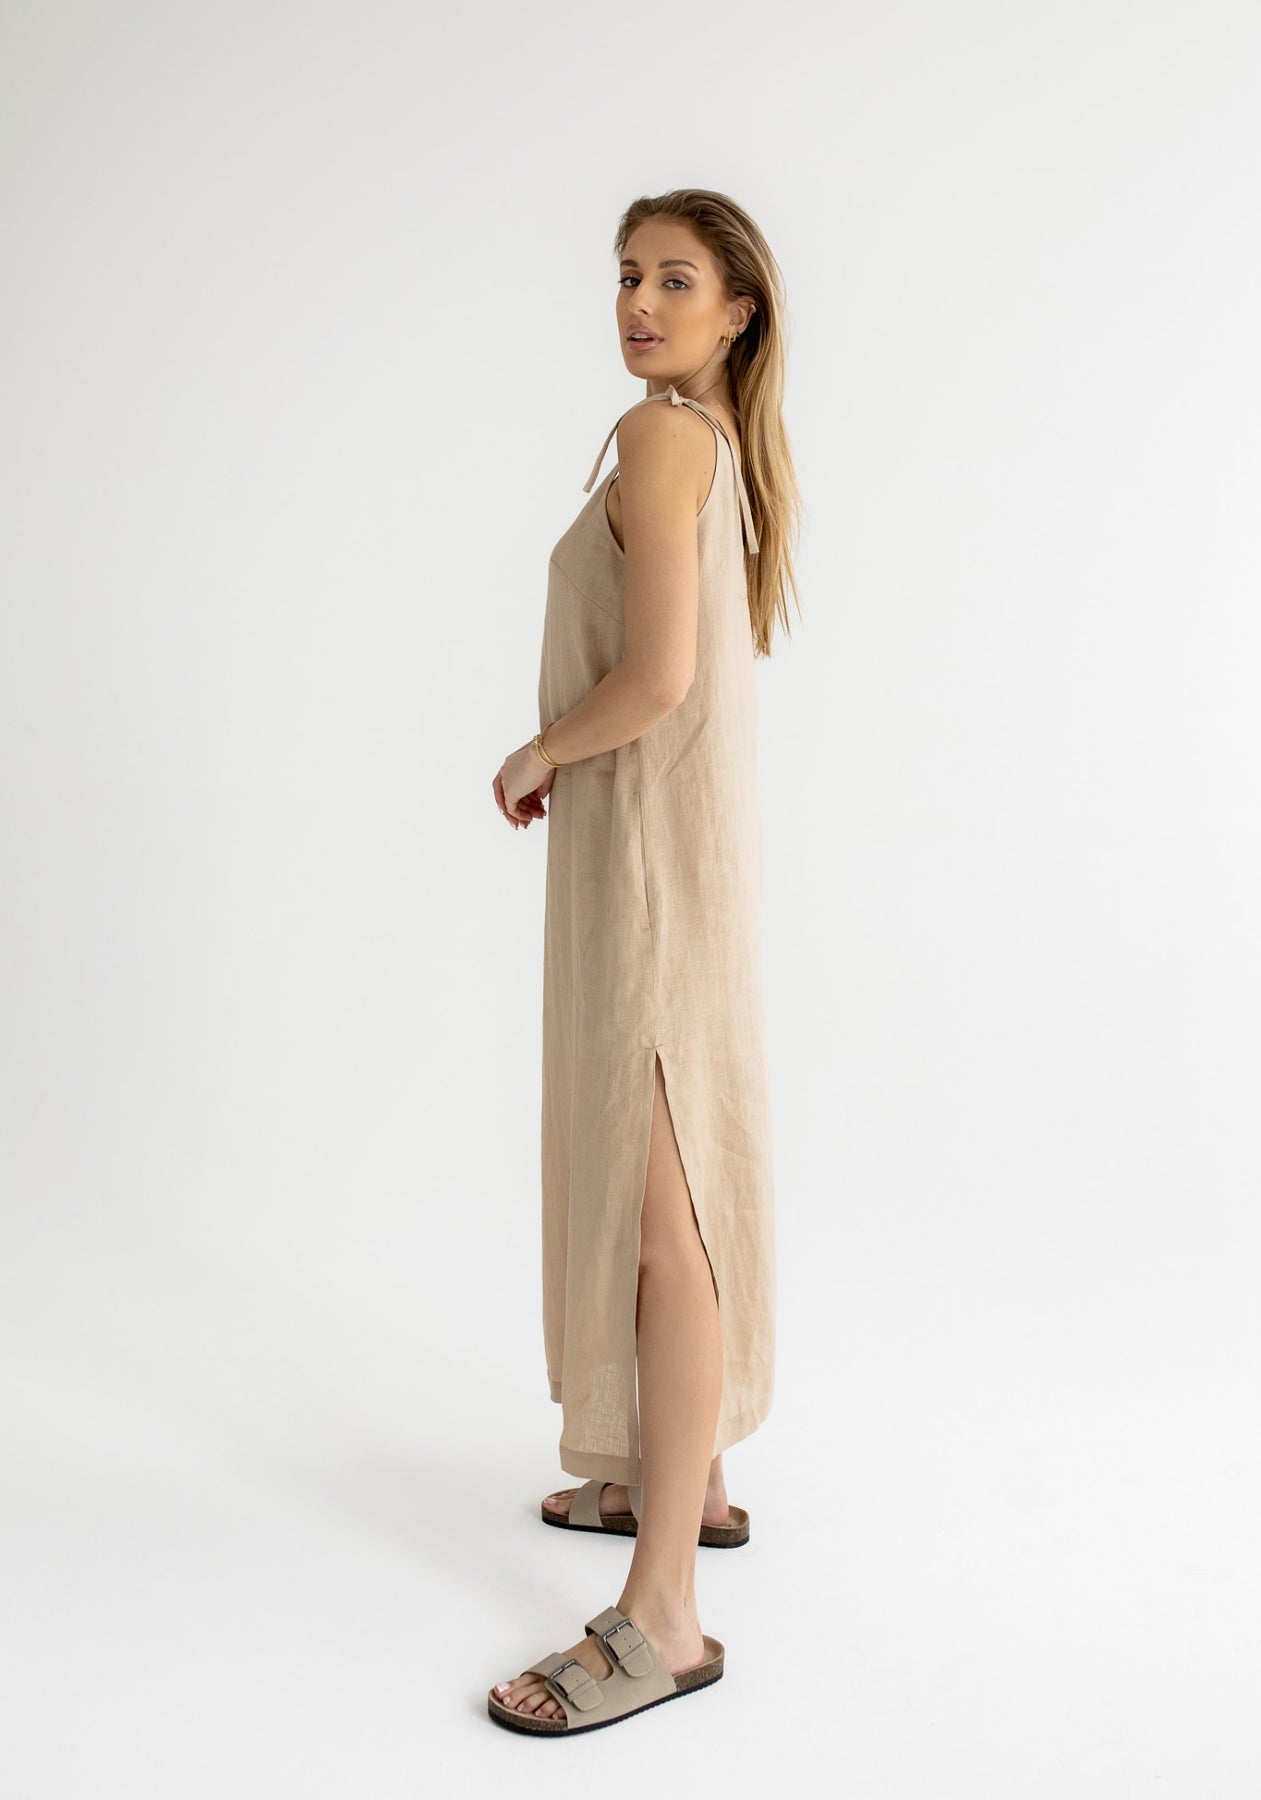 Women linen dress long loose fit Beige natural